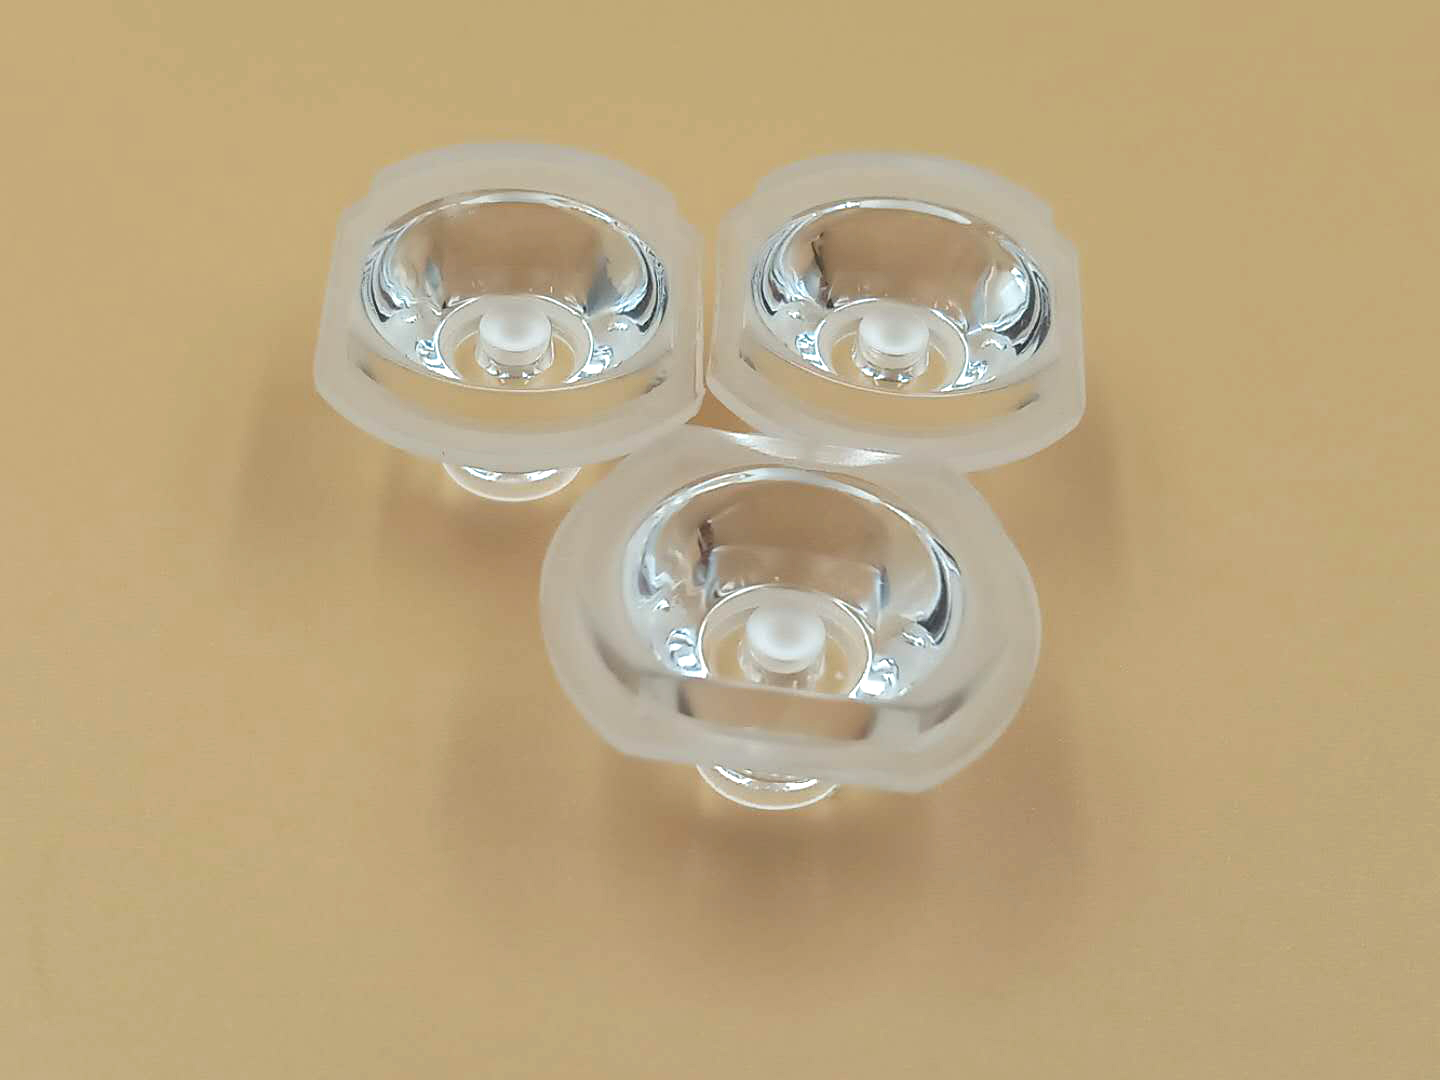 厂家直销 32透镜一体式珠面24度 筒灯 天花灯